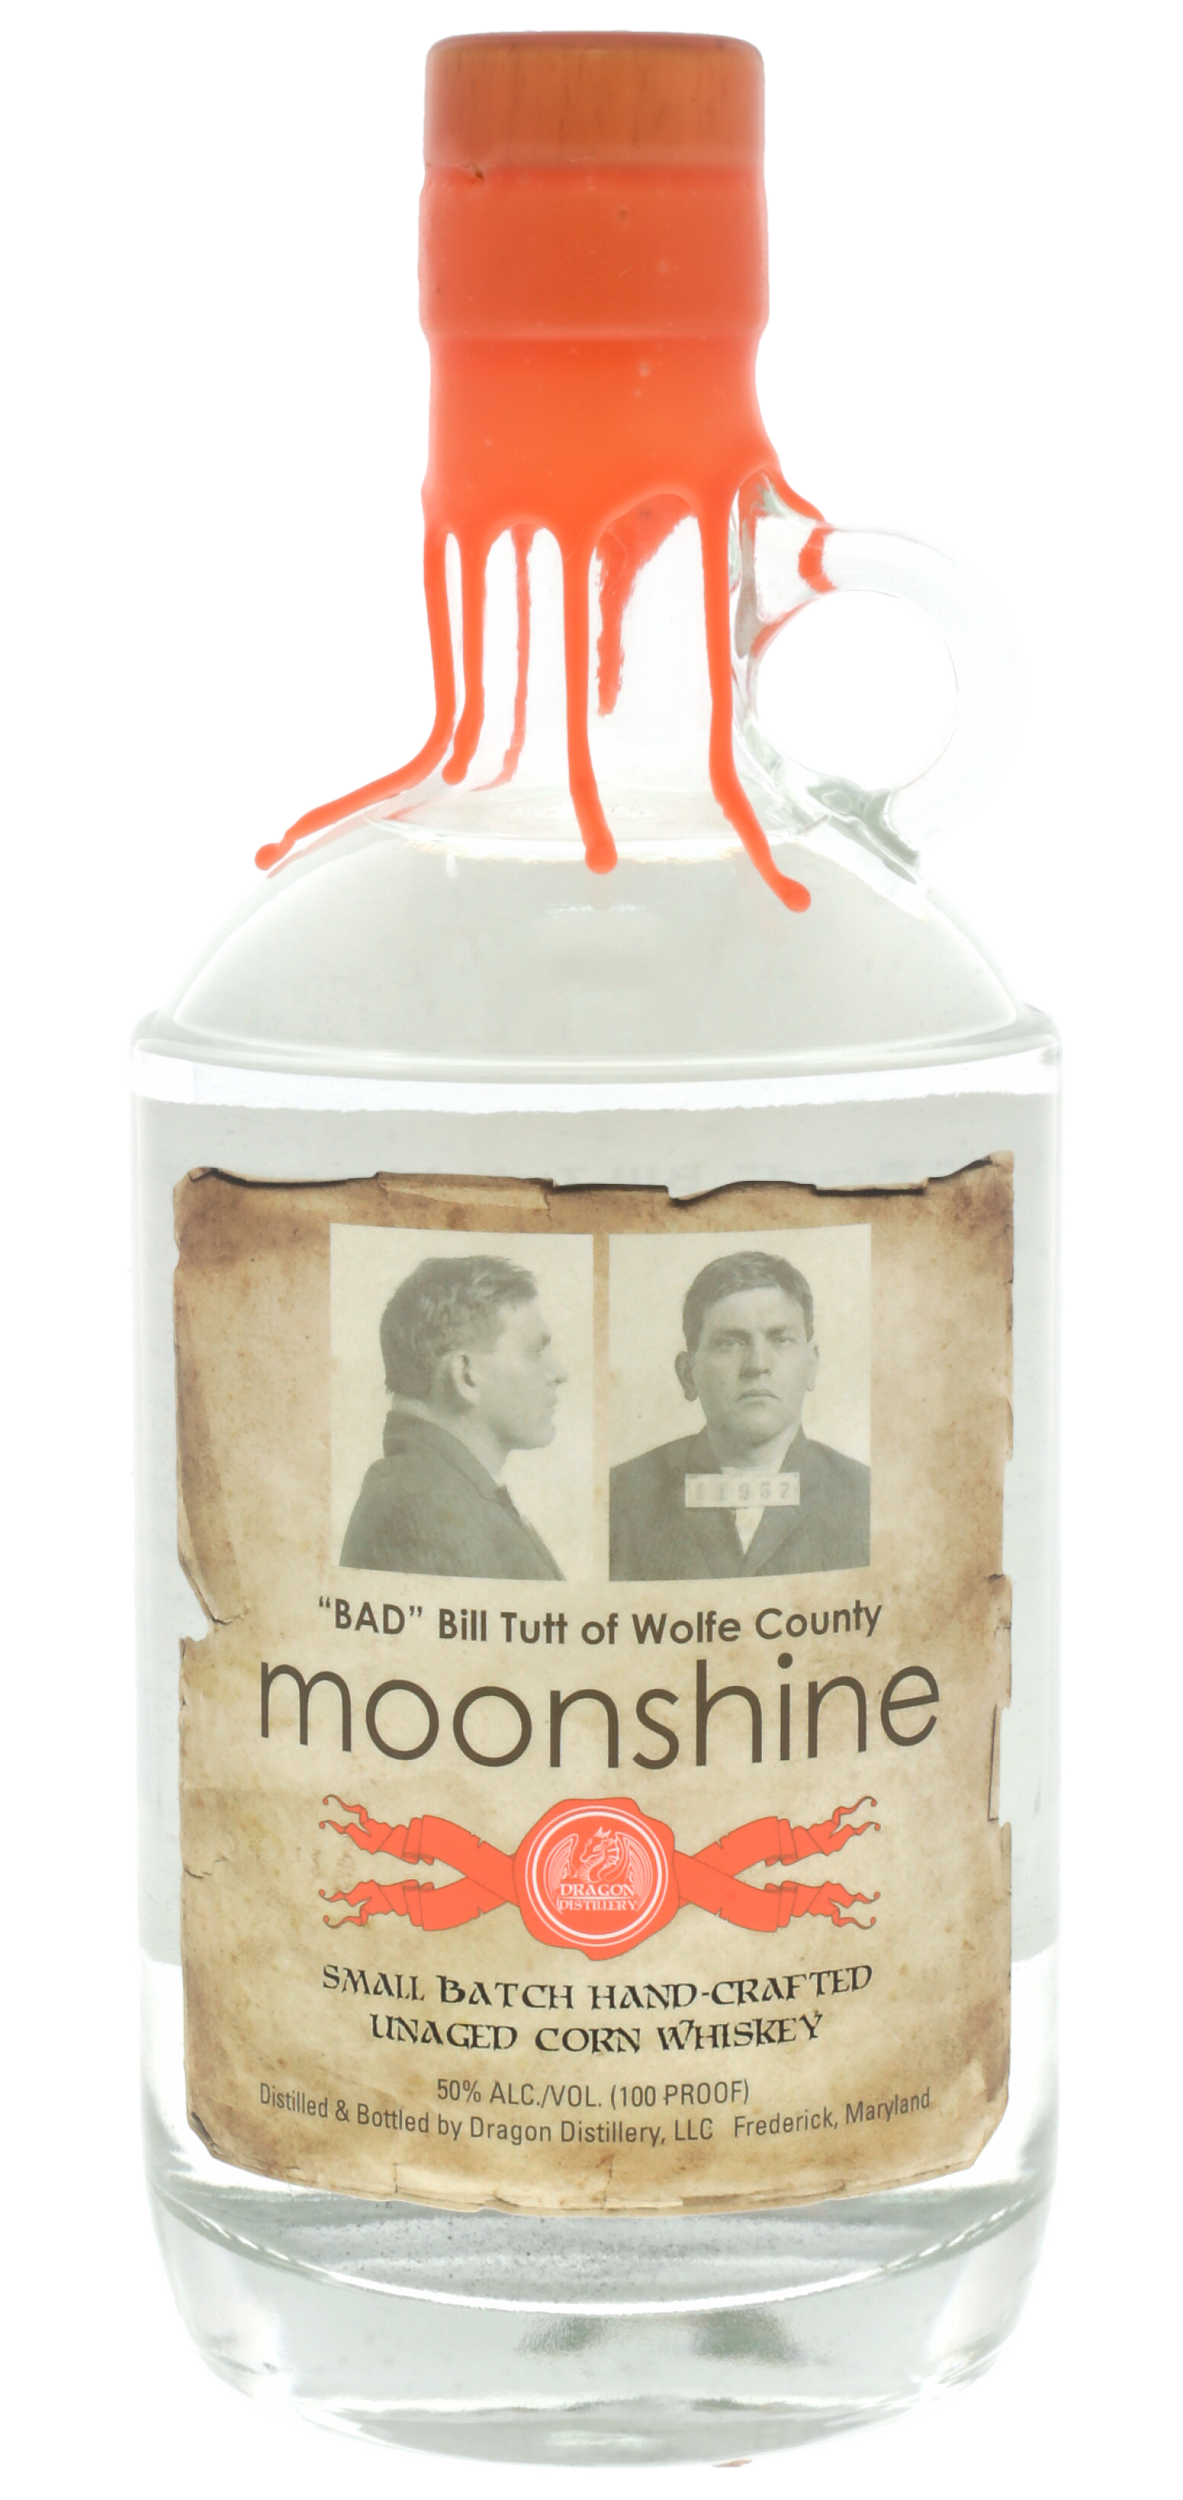 Bad Bill Tutt's Moonshine